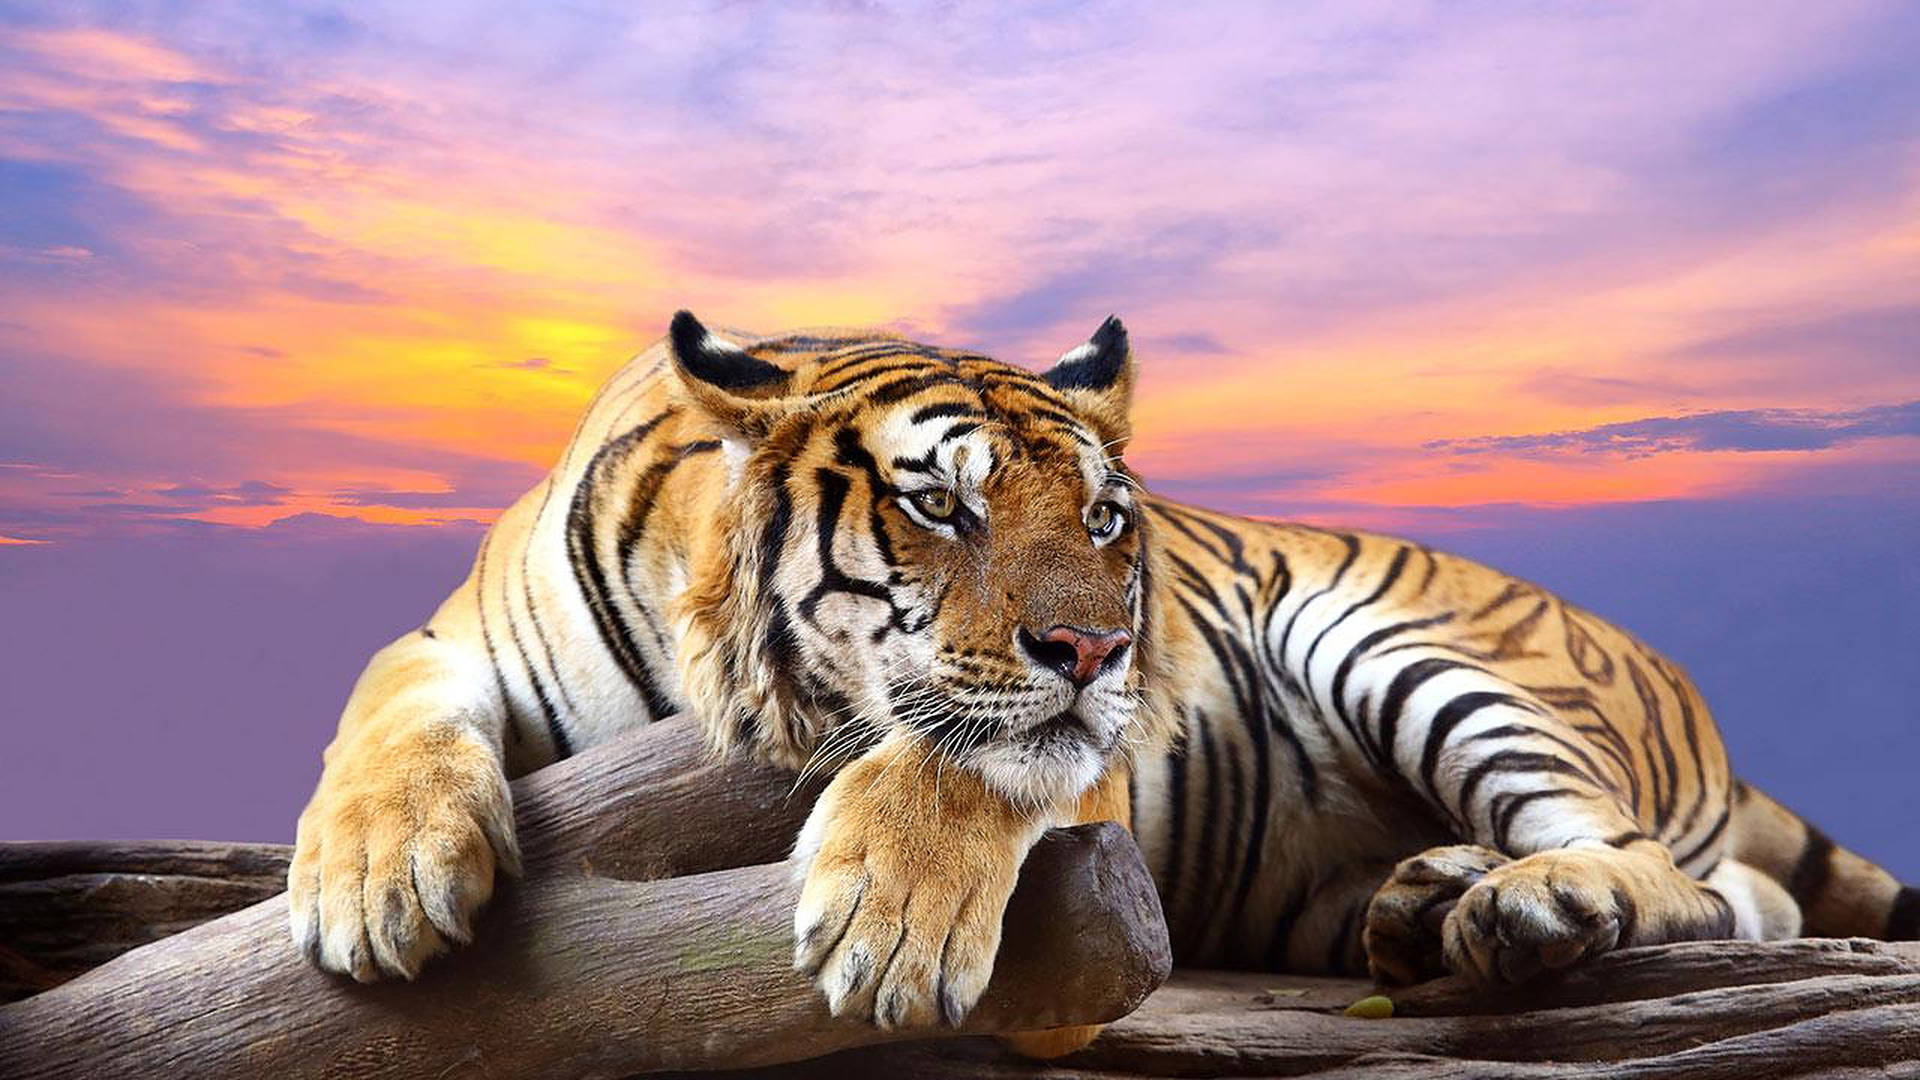 Wild Animal Tiger During Sunset